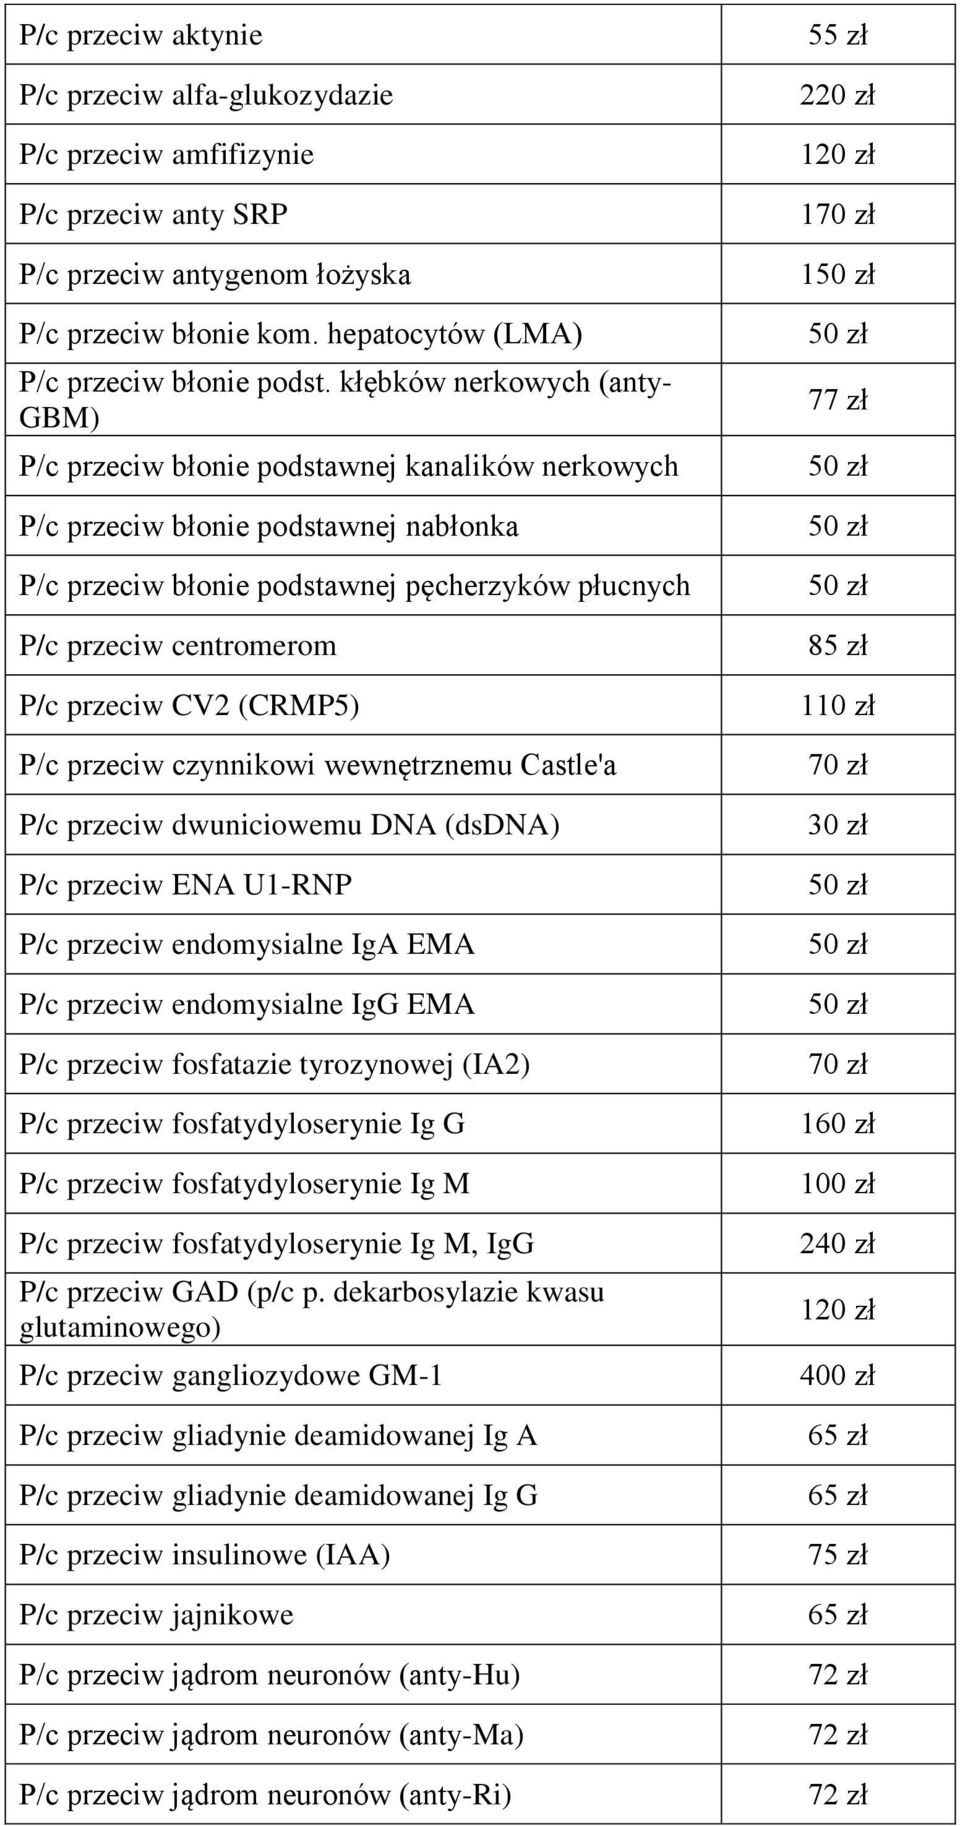 przeciw CV2 (CRMP5) P/c przeciw czynnikowi wewnętrznemu Castle'a P/c przeciw dwuniciowemu DNA (dsdna) P/c przeciw ENA U1-RNP P/c przeciw endomysialne IgA EMA P/c przeciw endomysialne IgG EMA P/c